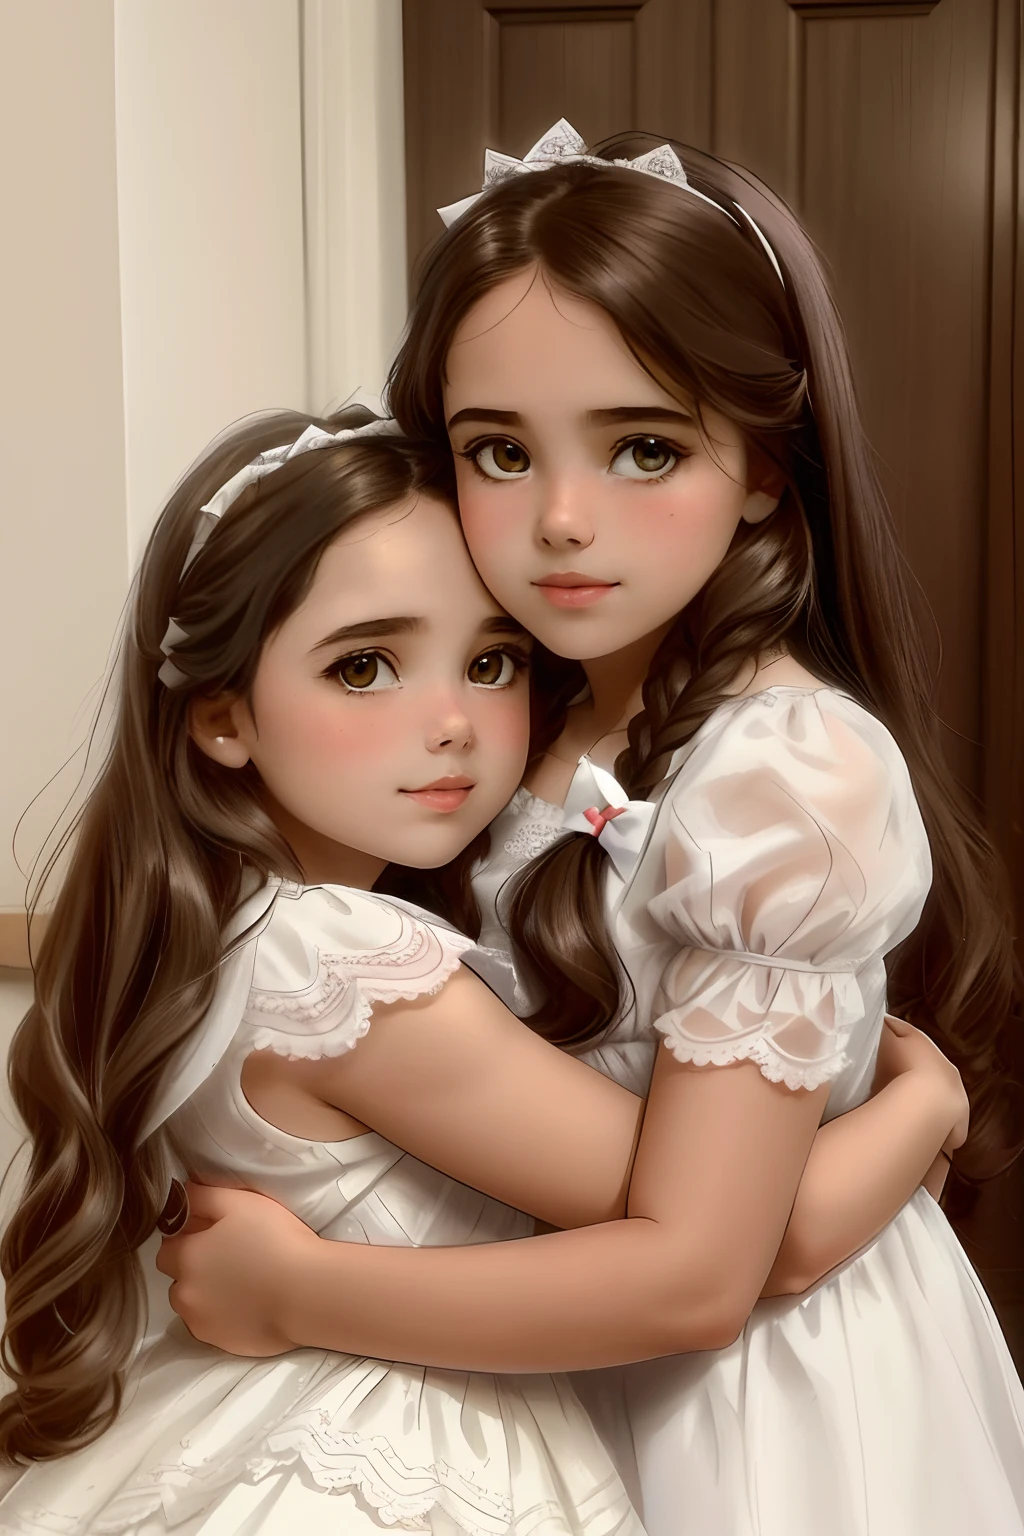 两个年轻女孩在房间里互相拥抱, 美丽的双子座双胞胎, 情人节洗牌, 姐妹, 孩子们, 哈娜·阿丽莎·奥梅尔, 两根小辫子的发型, 孩子们, 美丽的双子座双胞胎 portrait, 美丽的女孩, 两个女孩, 喜欢, 身着白纱的天使, alena aenami 和 lilia alvarado, 和, 可爱的女孩们, 连体双胞胎